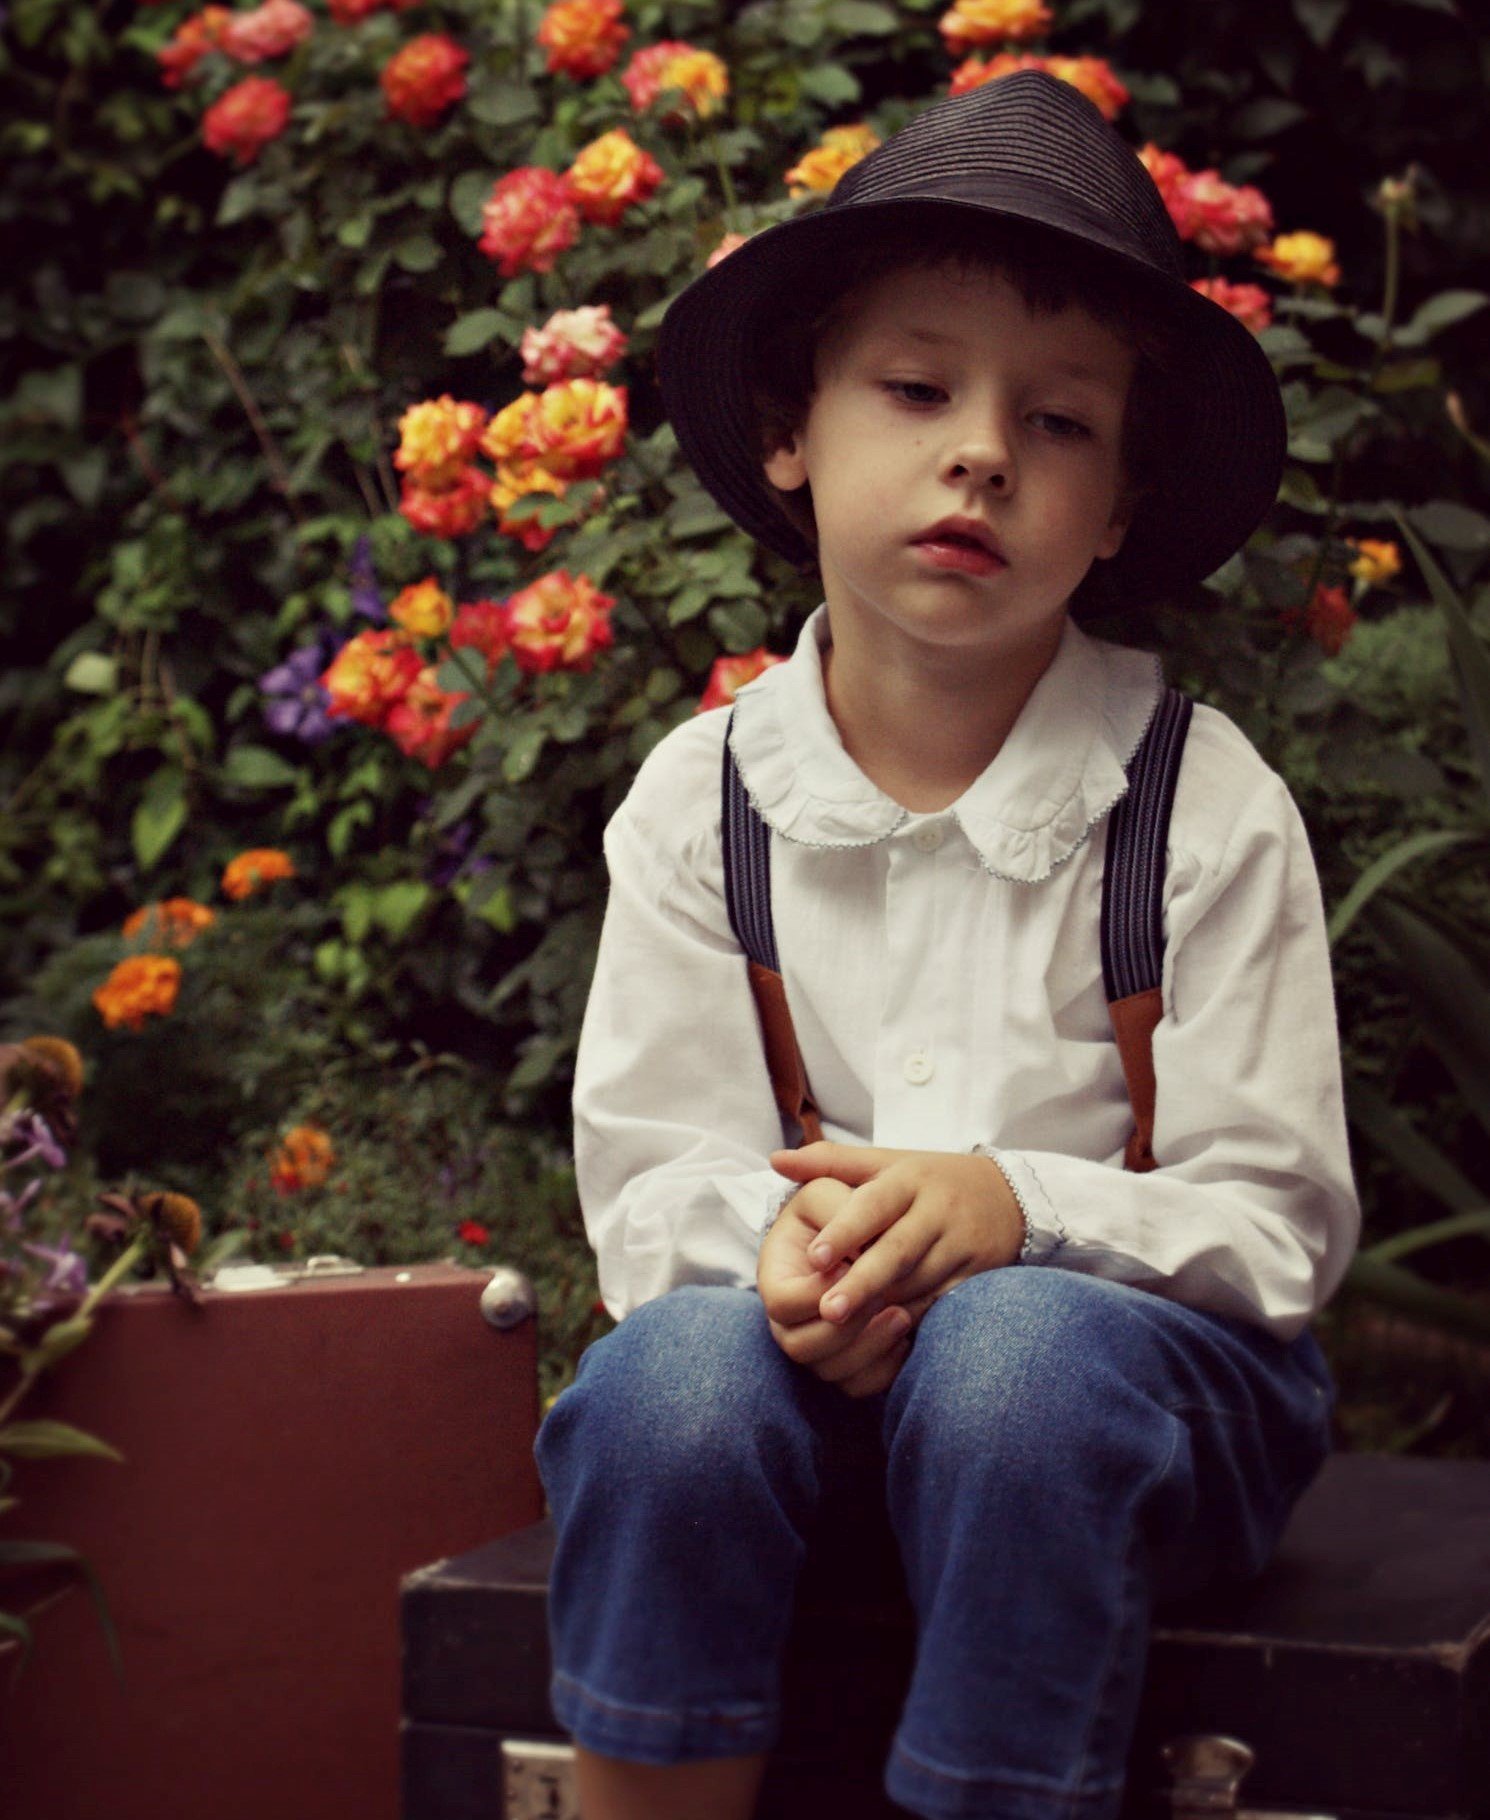 Un niño con rostro serio y un sombrero con flores en el fondo. | Foto: Pexels